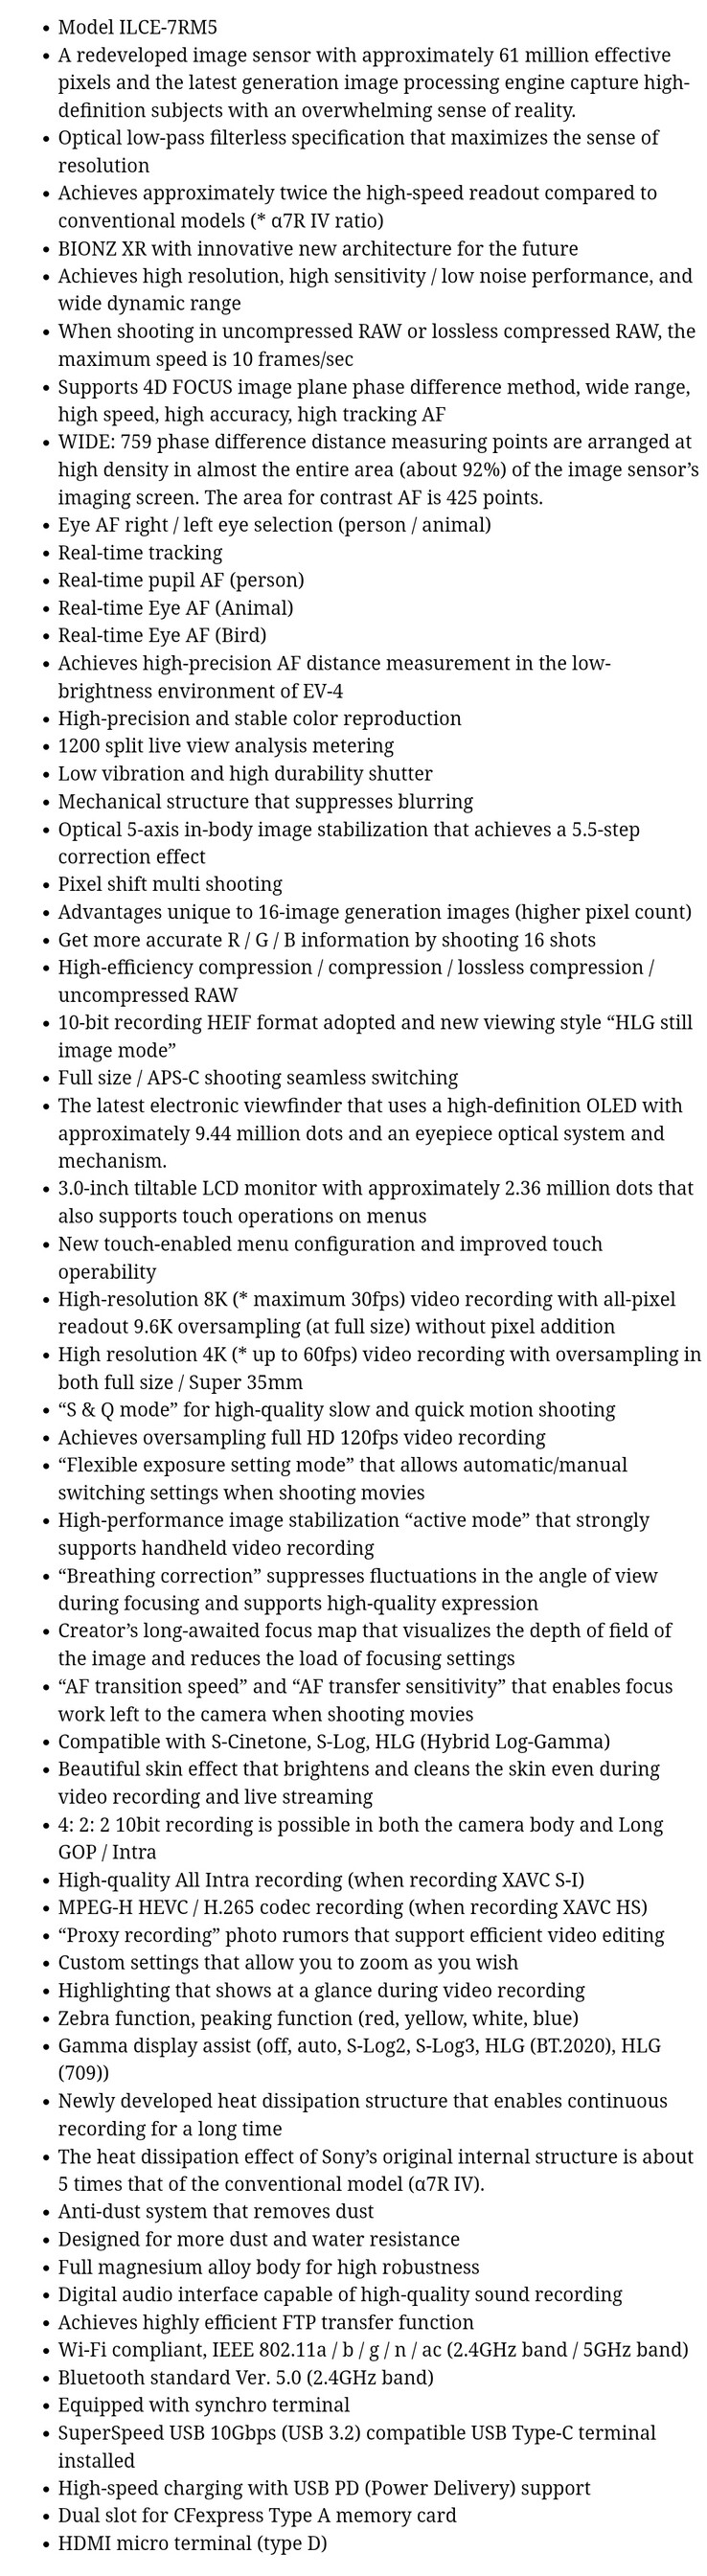 La presunta lista delle specifiche della Sony a7R V in versione integrale. (Fonte: PhotoRumors)